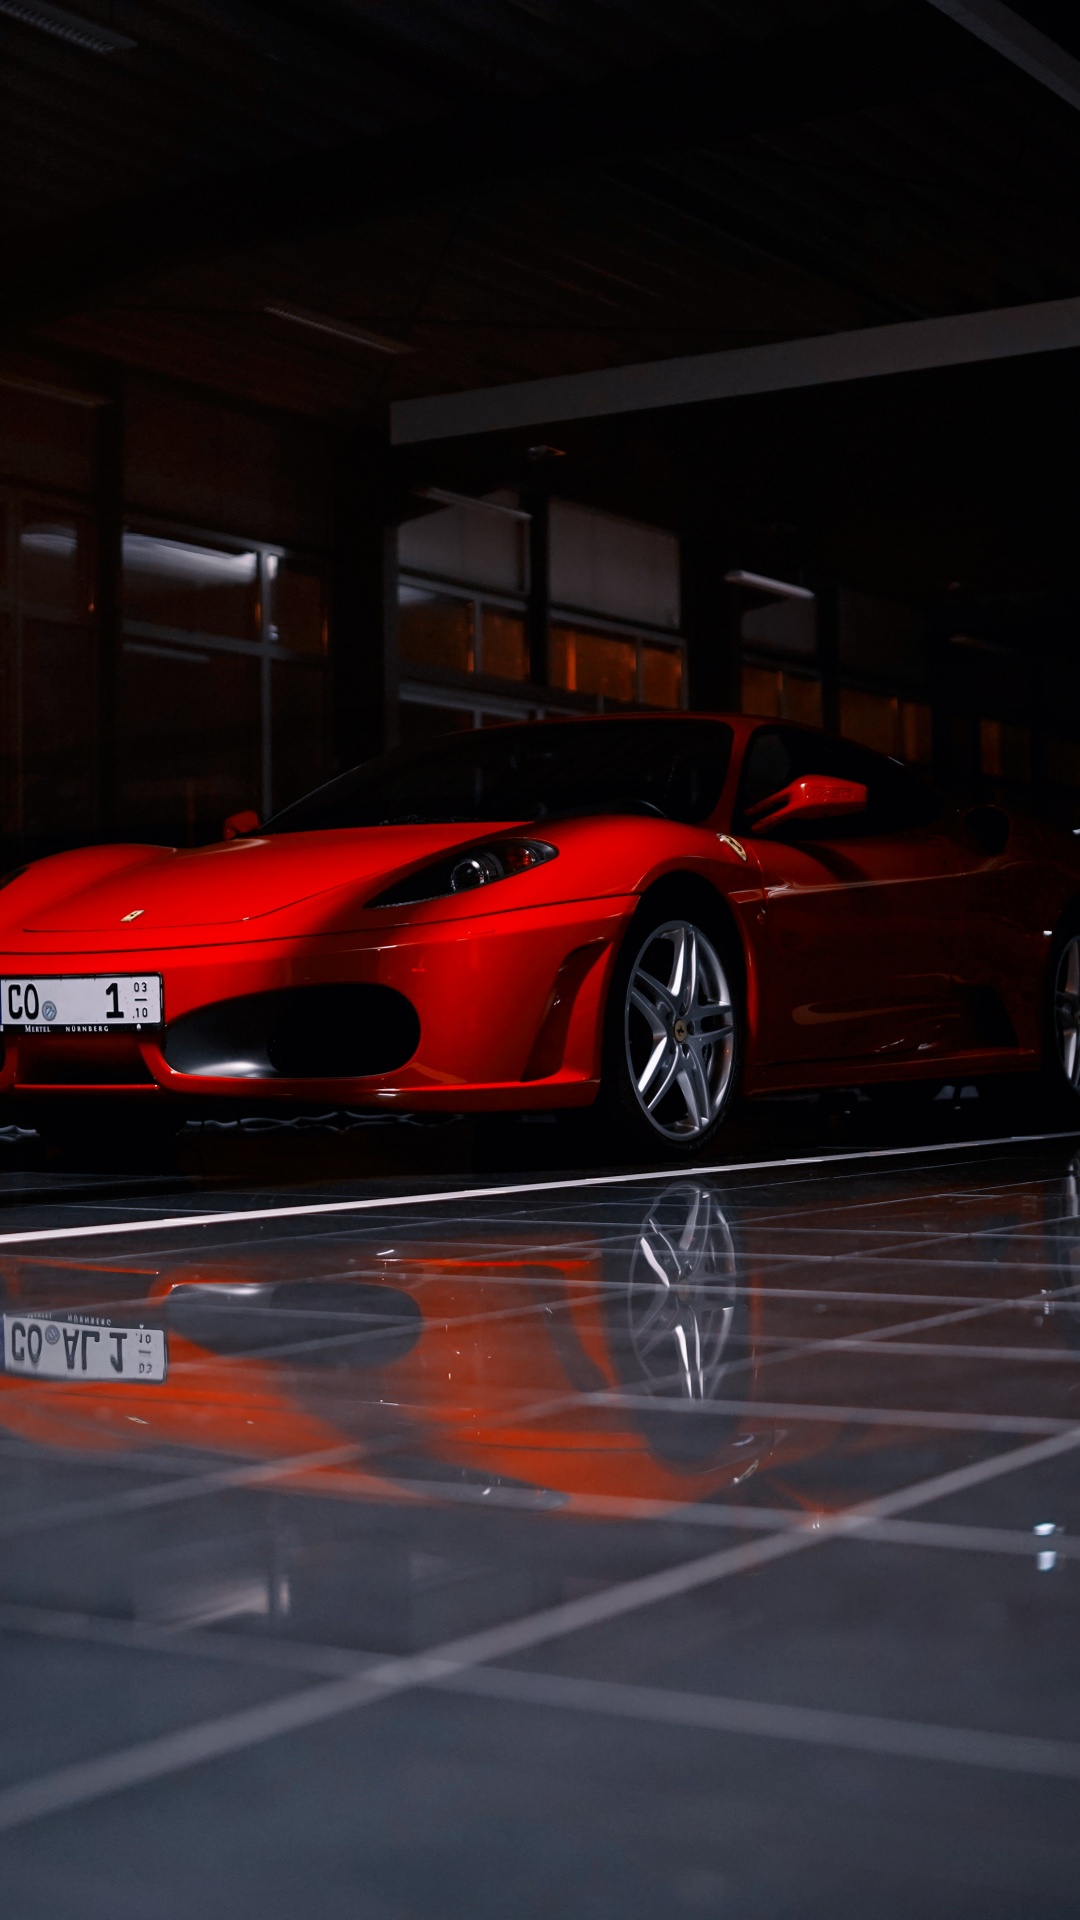 Roter Ferrari 458 Italia Auf Parkplatz Geparkt. Wallpaper in 1080x1920 Resolution